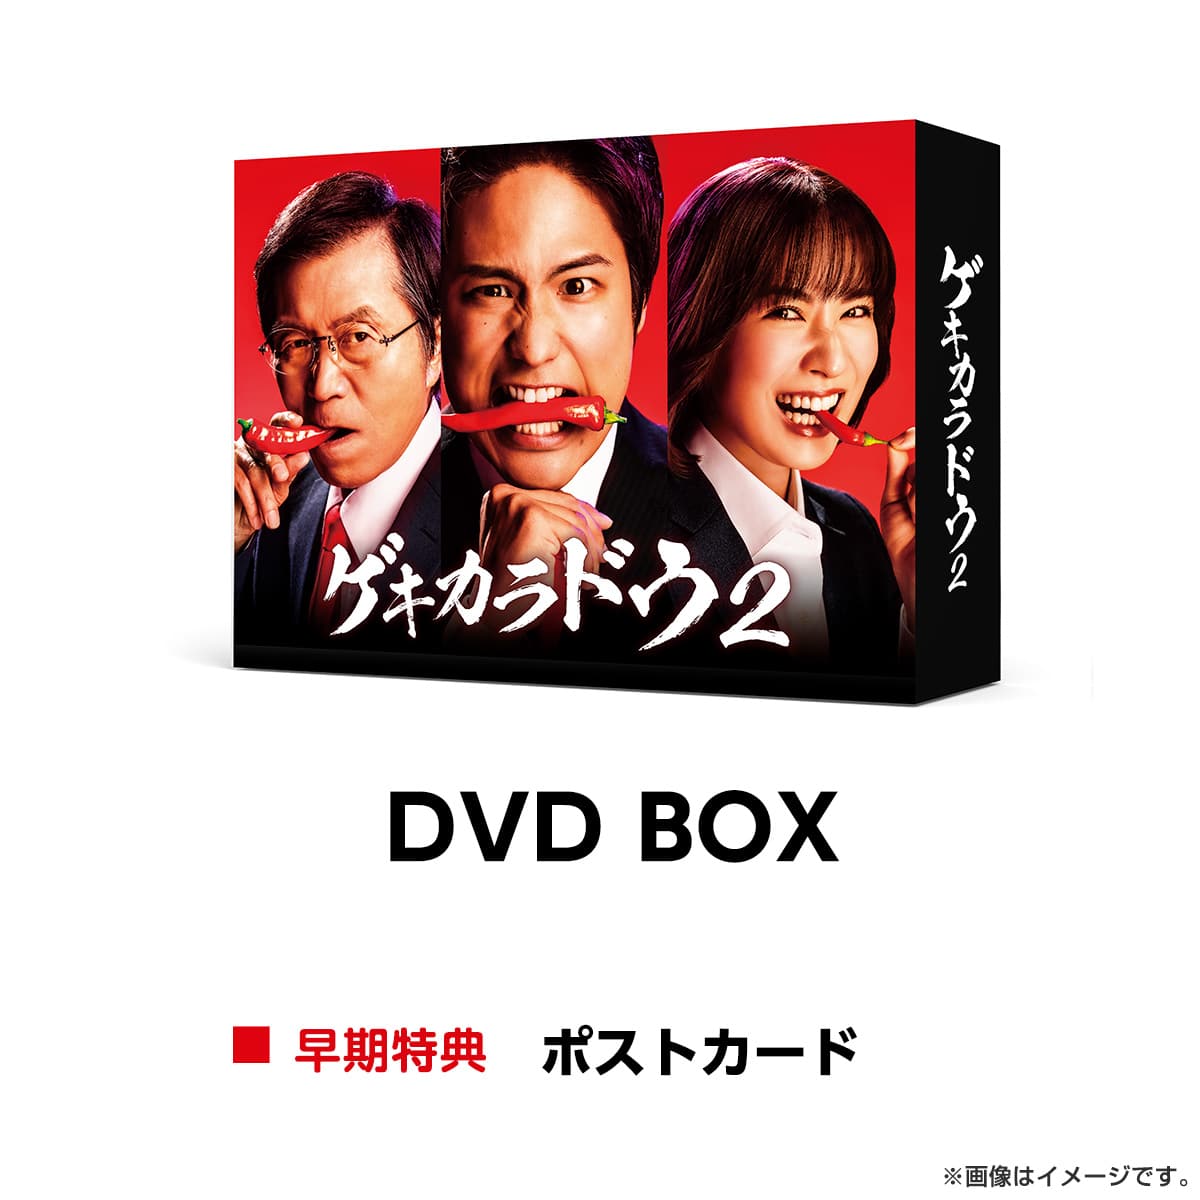 テレ東本舗。WEB -Blu-ray＆DVDテレビ東京